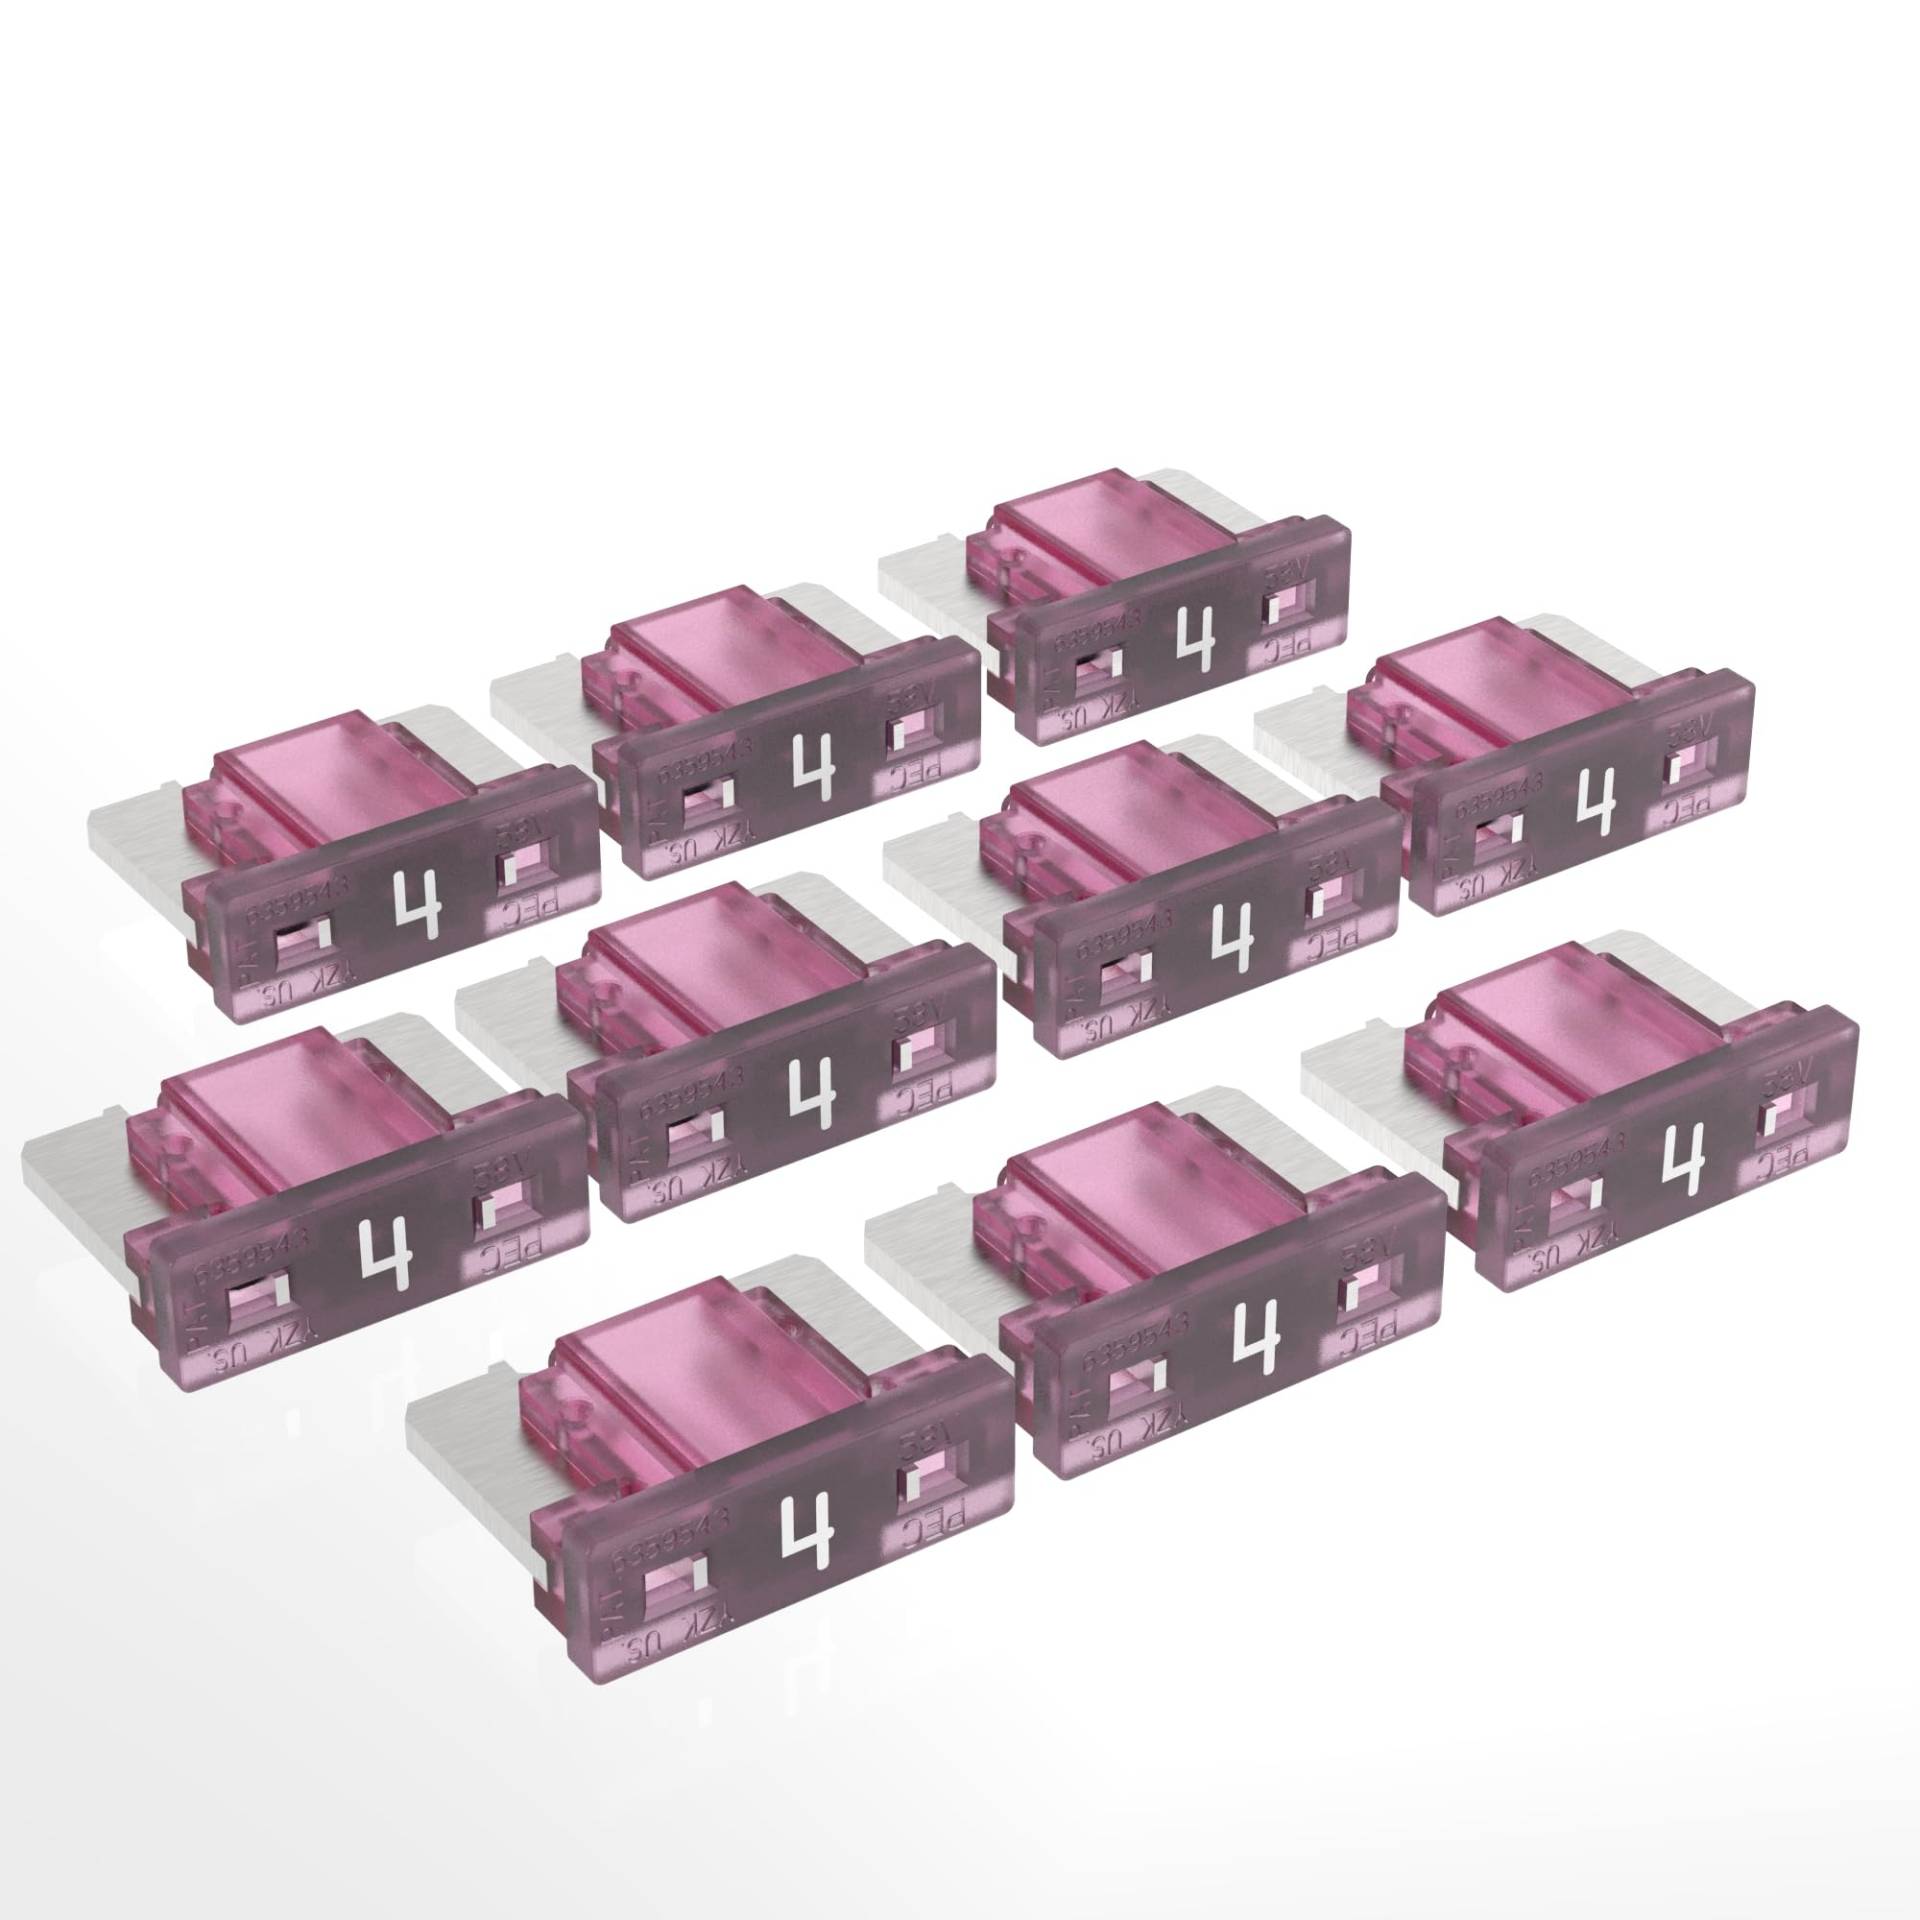 AUPROTEC Mini LP Kfz Sicherungen Flachstecksicherungen 2A - 30A Auswahl: 4A Ampere pink, 10 Stück von AUPROTEC